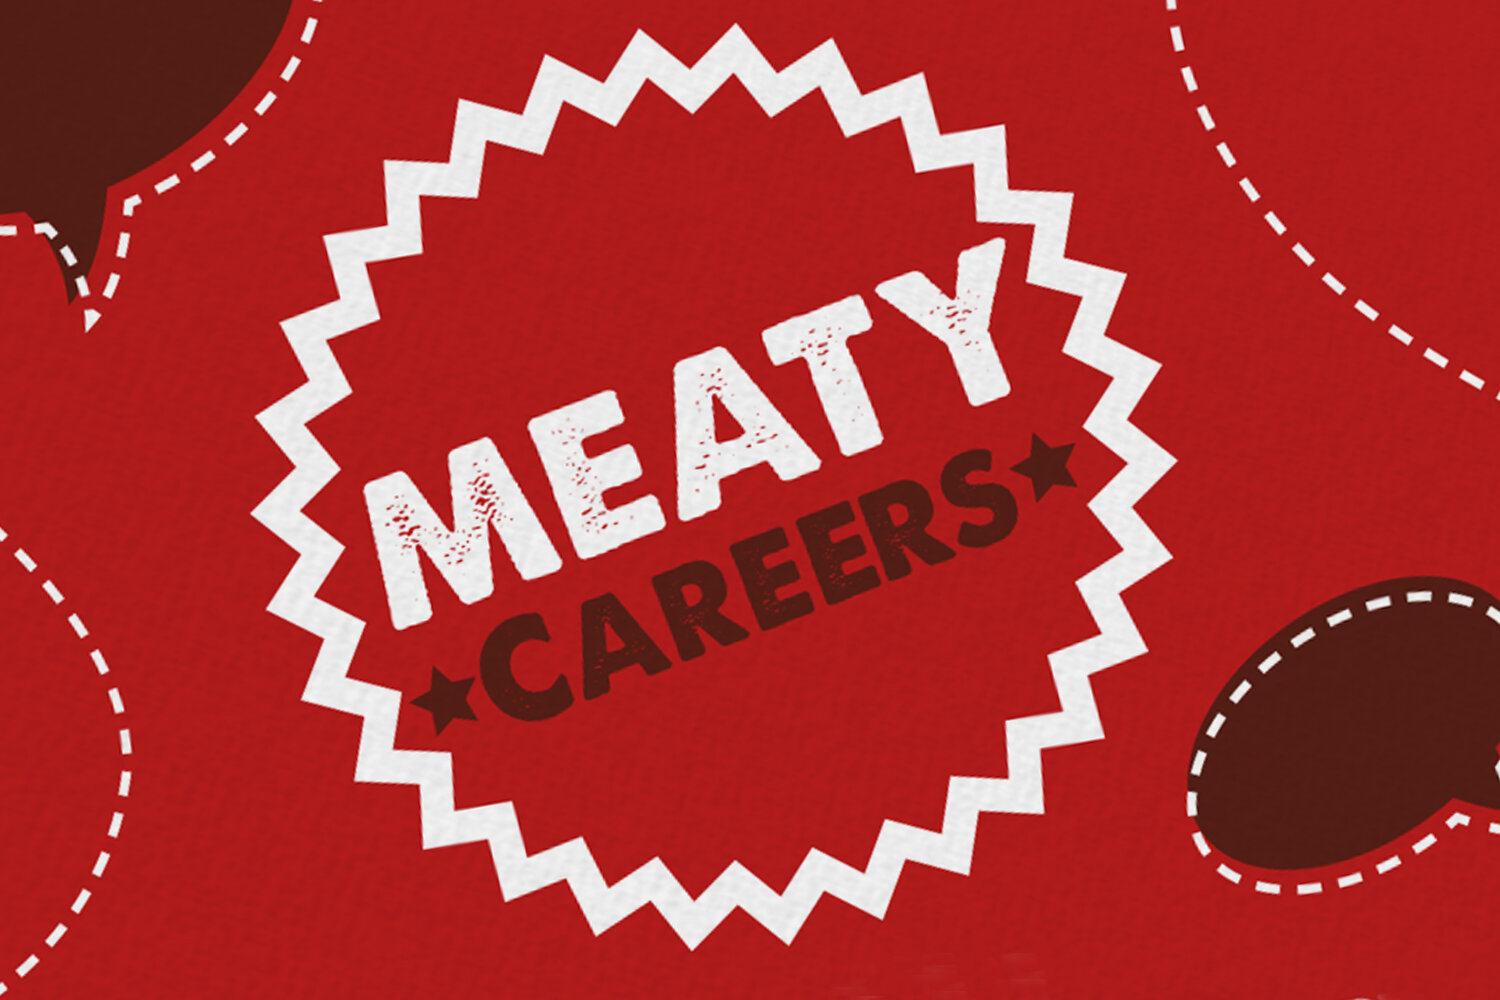 Meaty_Careers1_opt.jpg